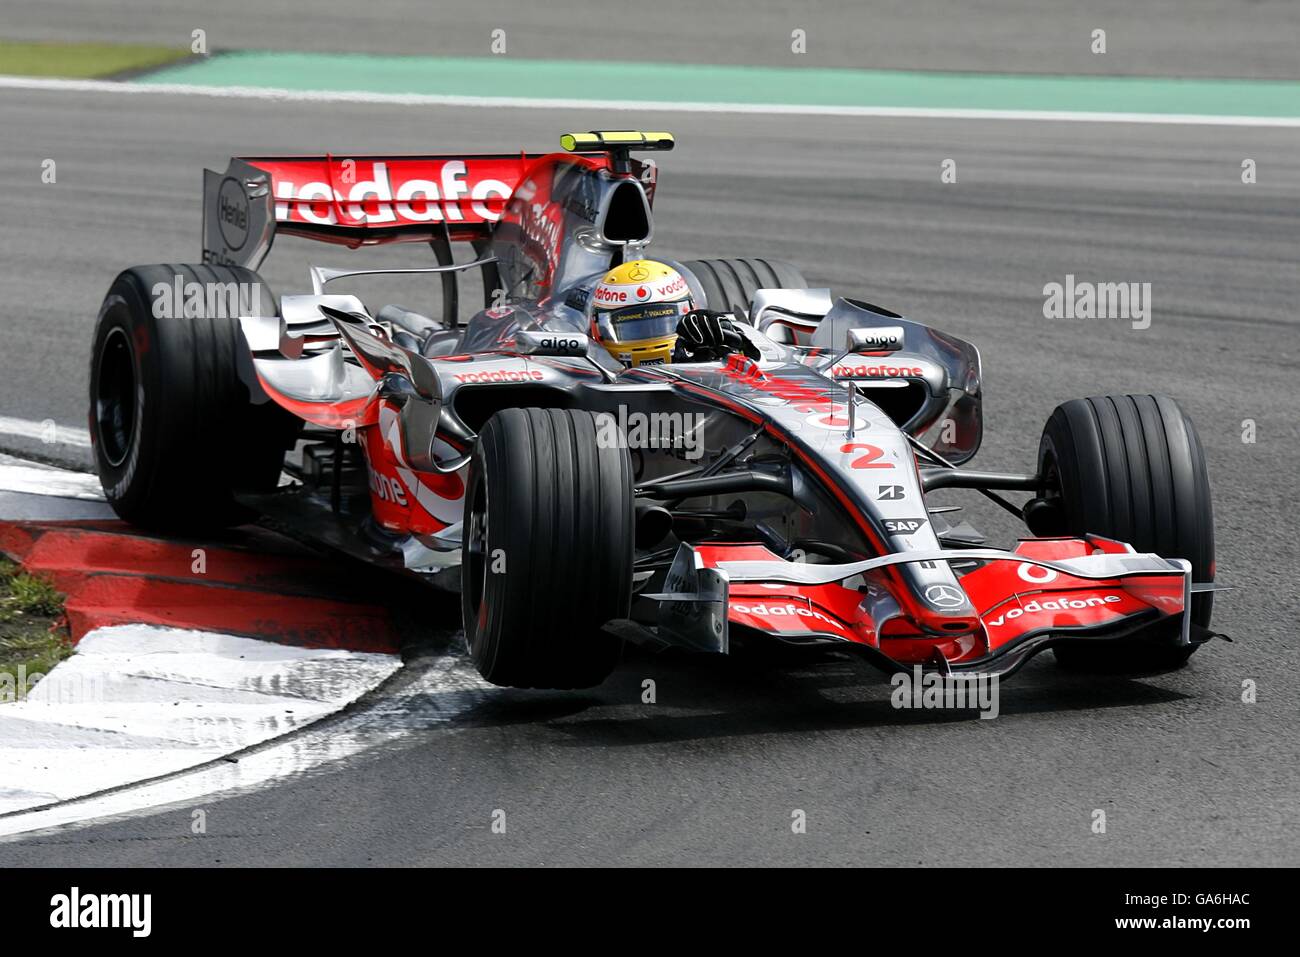 Course automobile Formula One - Grand Prix d'Europe - course - Nurburgring.Lewis Hamilton de McLaren lors du Grand Prix de Formule 1 européen à Nurburgring, en Allemagne. Banque D'Images